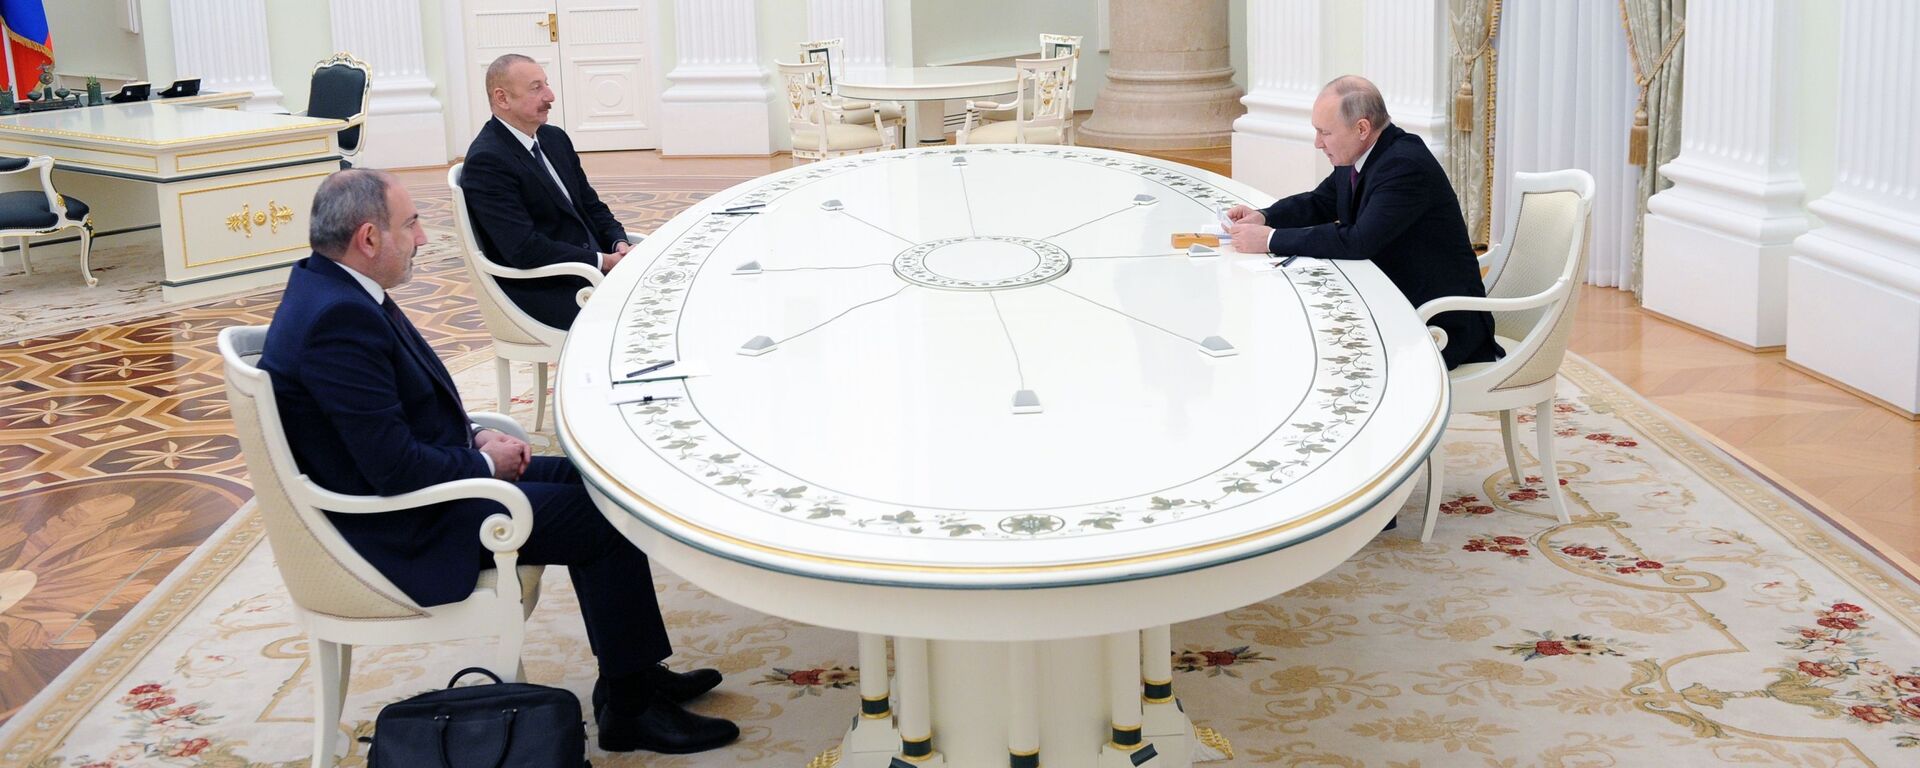 ՀՀ վարչապետ Նիկոլ Փաշինյանը ՌԴ նախագահ Վլադիմիր Պուտինը և Ադրբեջանի նախագահ Իլհամ Ալիևը - Sputnik Արմենիա, 1920, 24.09.2021